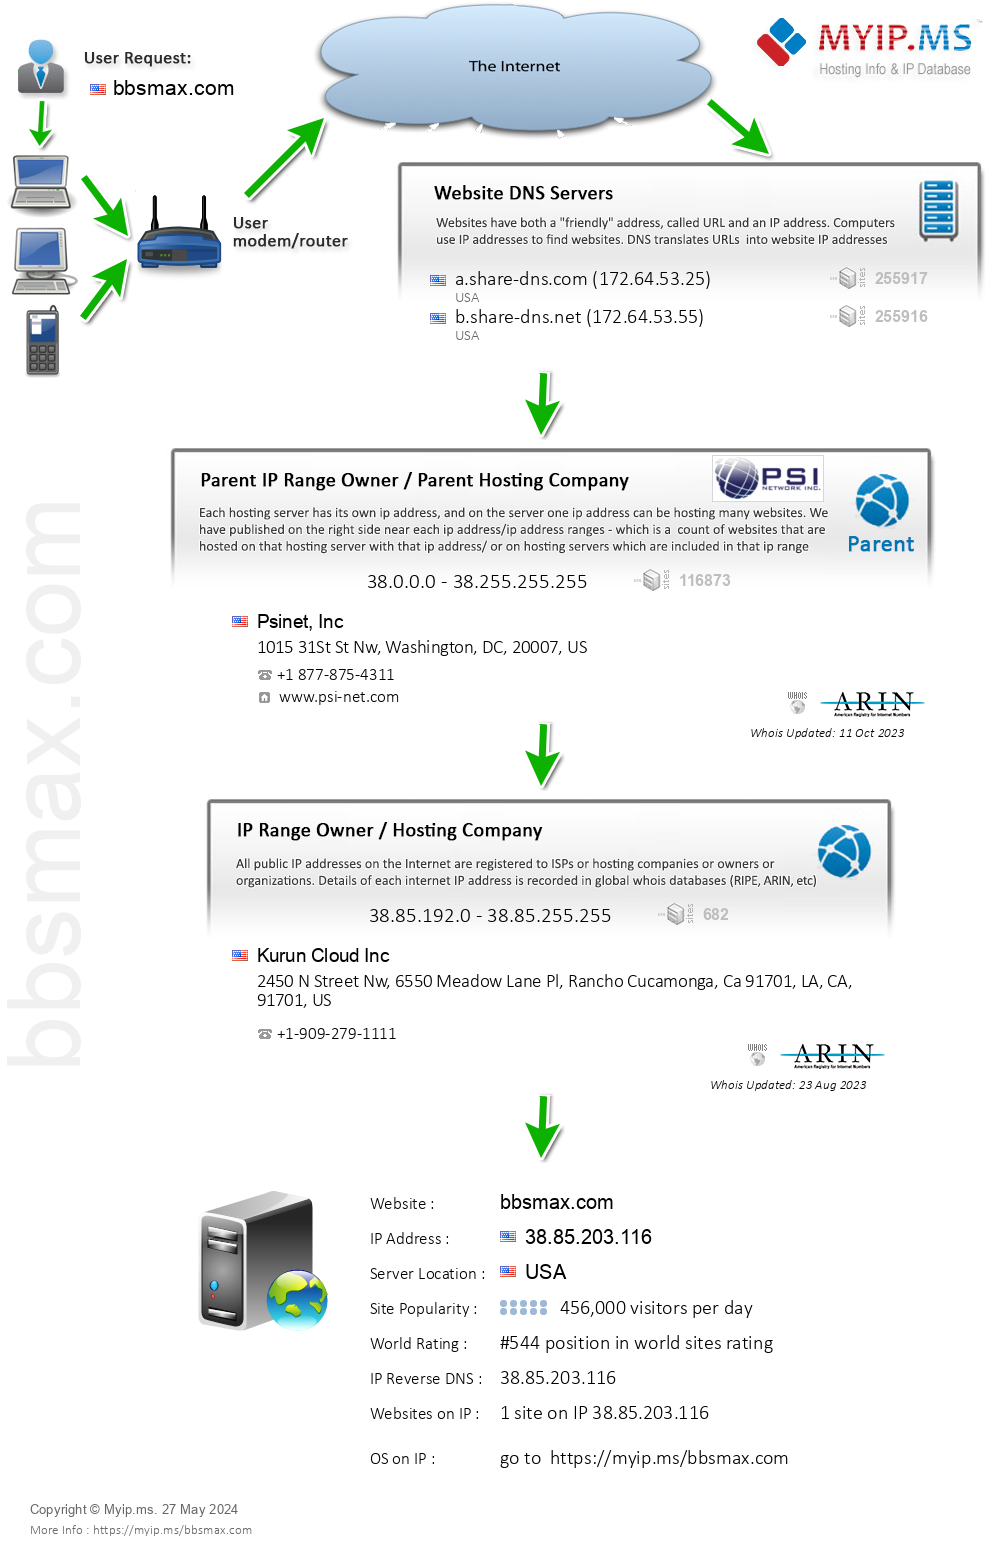 Bbsmax.com - Website Hosting Visual IP Diagram